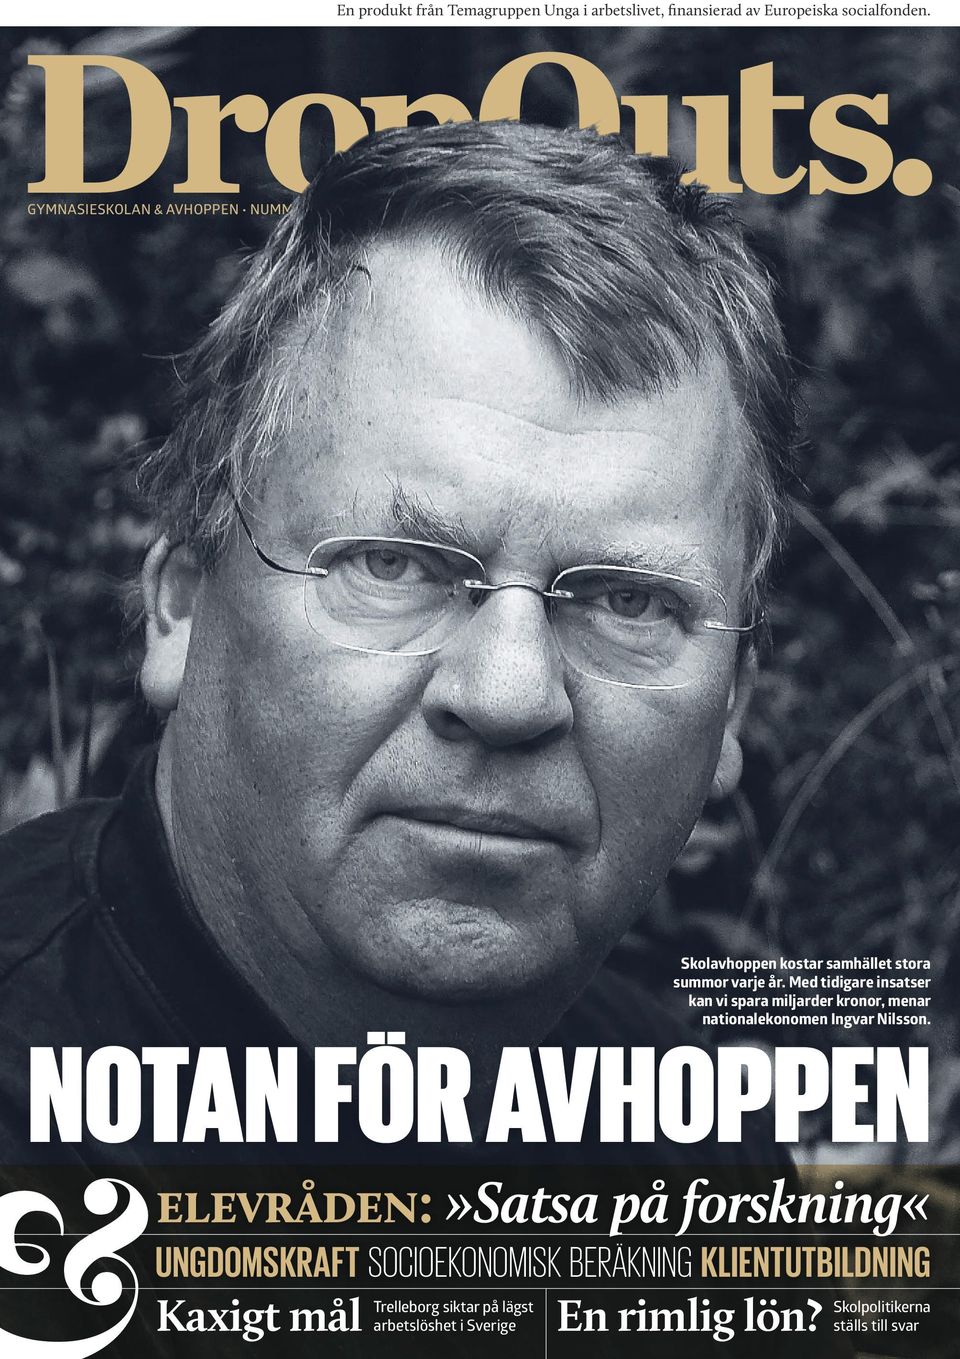 Med tidigare insatser kan vi spara miljarder kronor, menar nationalekonomen Ingvar Nilsson.